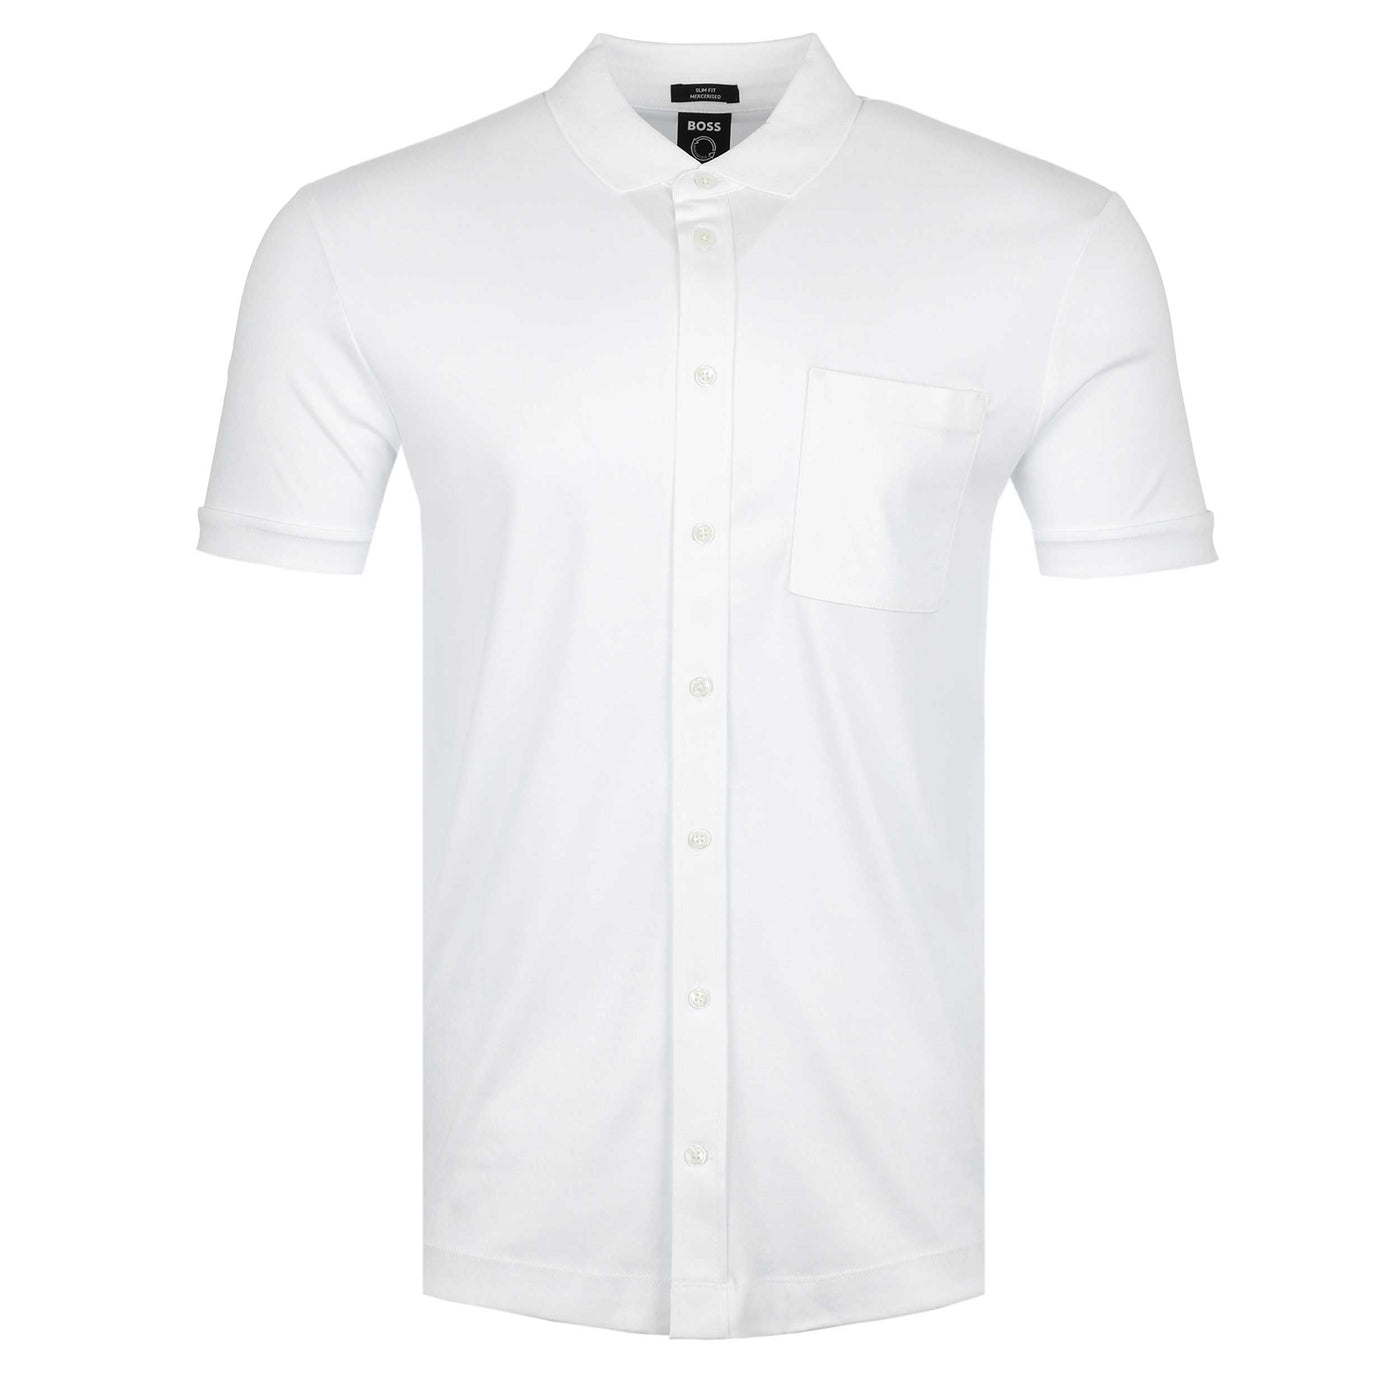 BOSS Puno 11 Polo Shirt in White